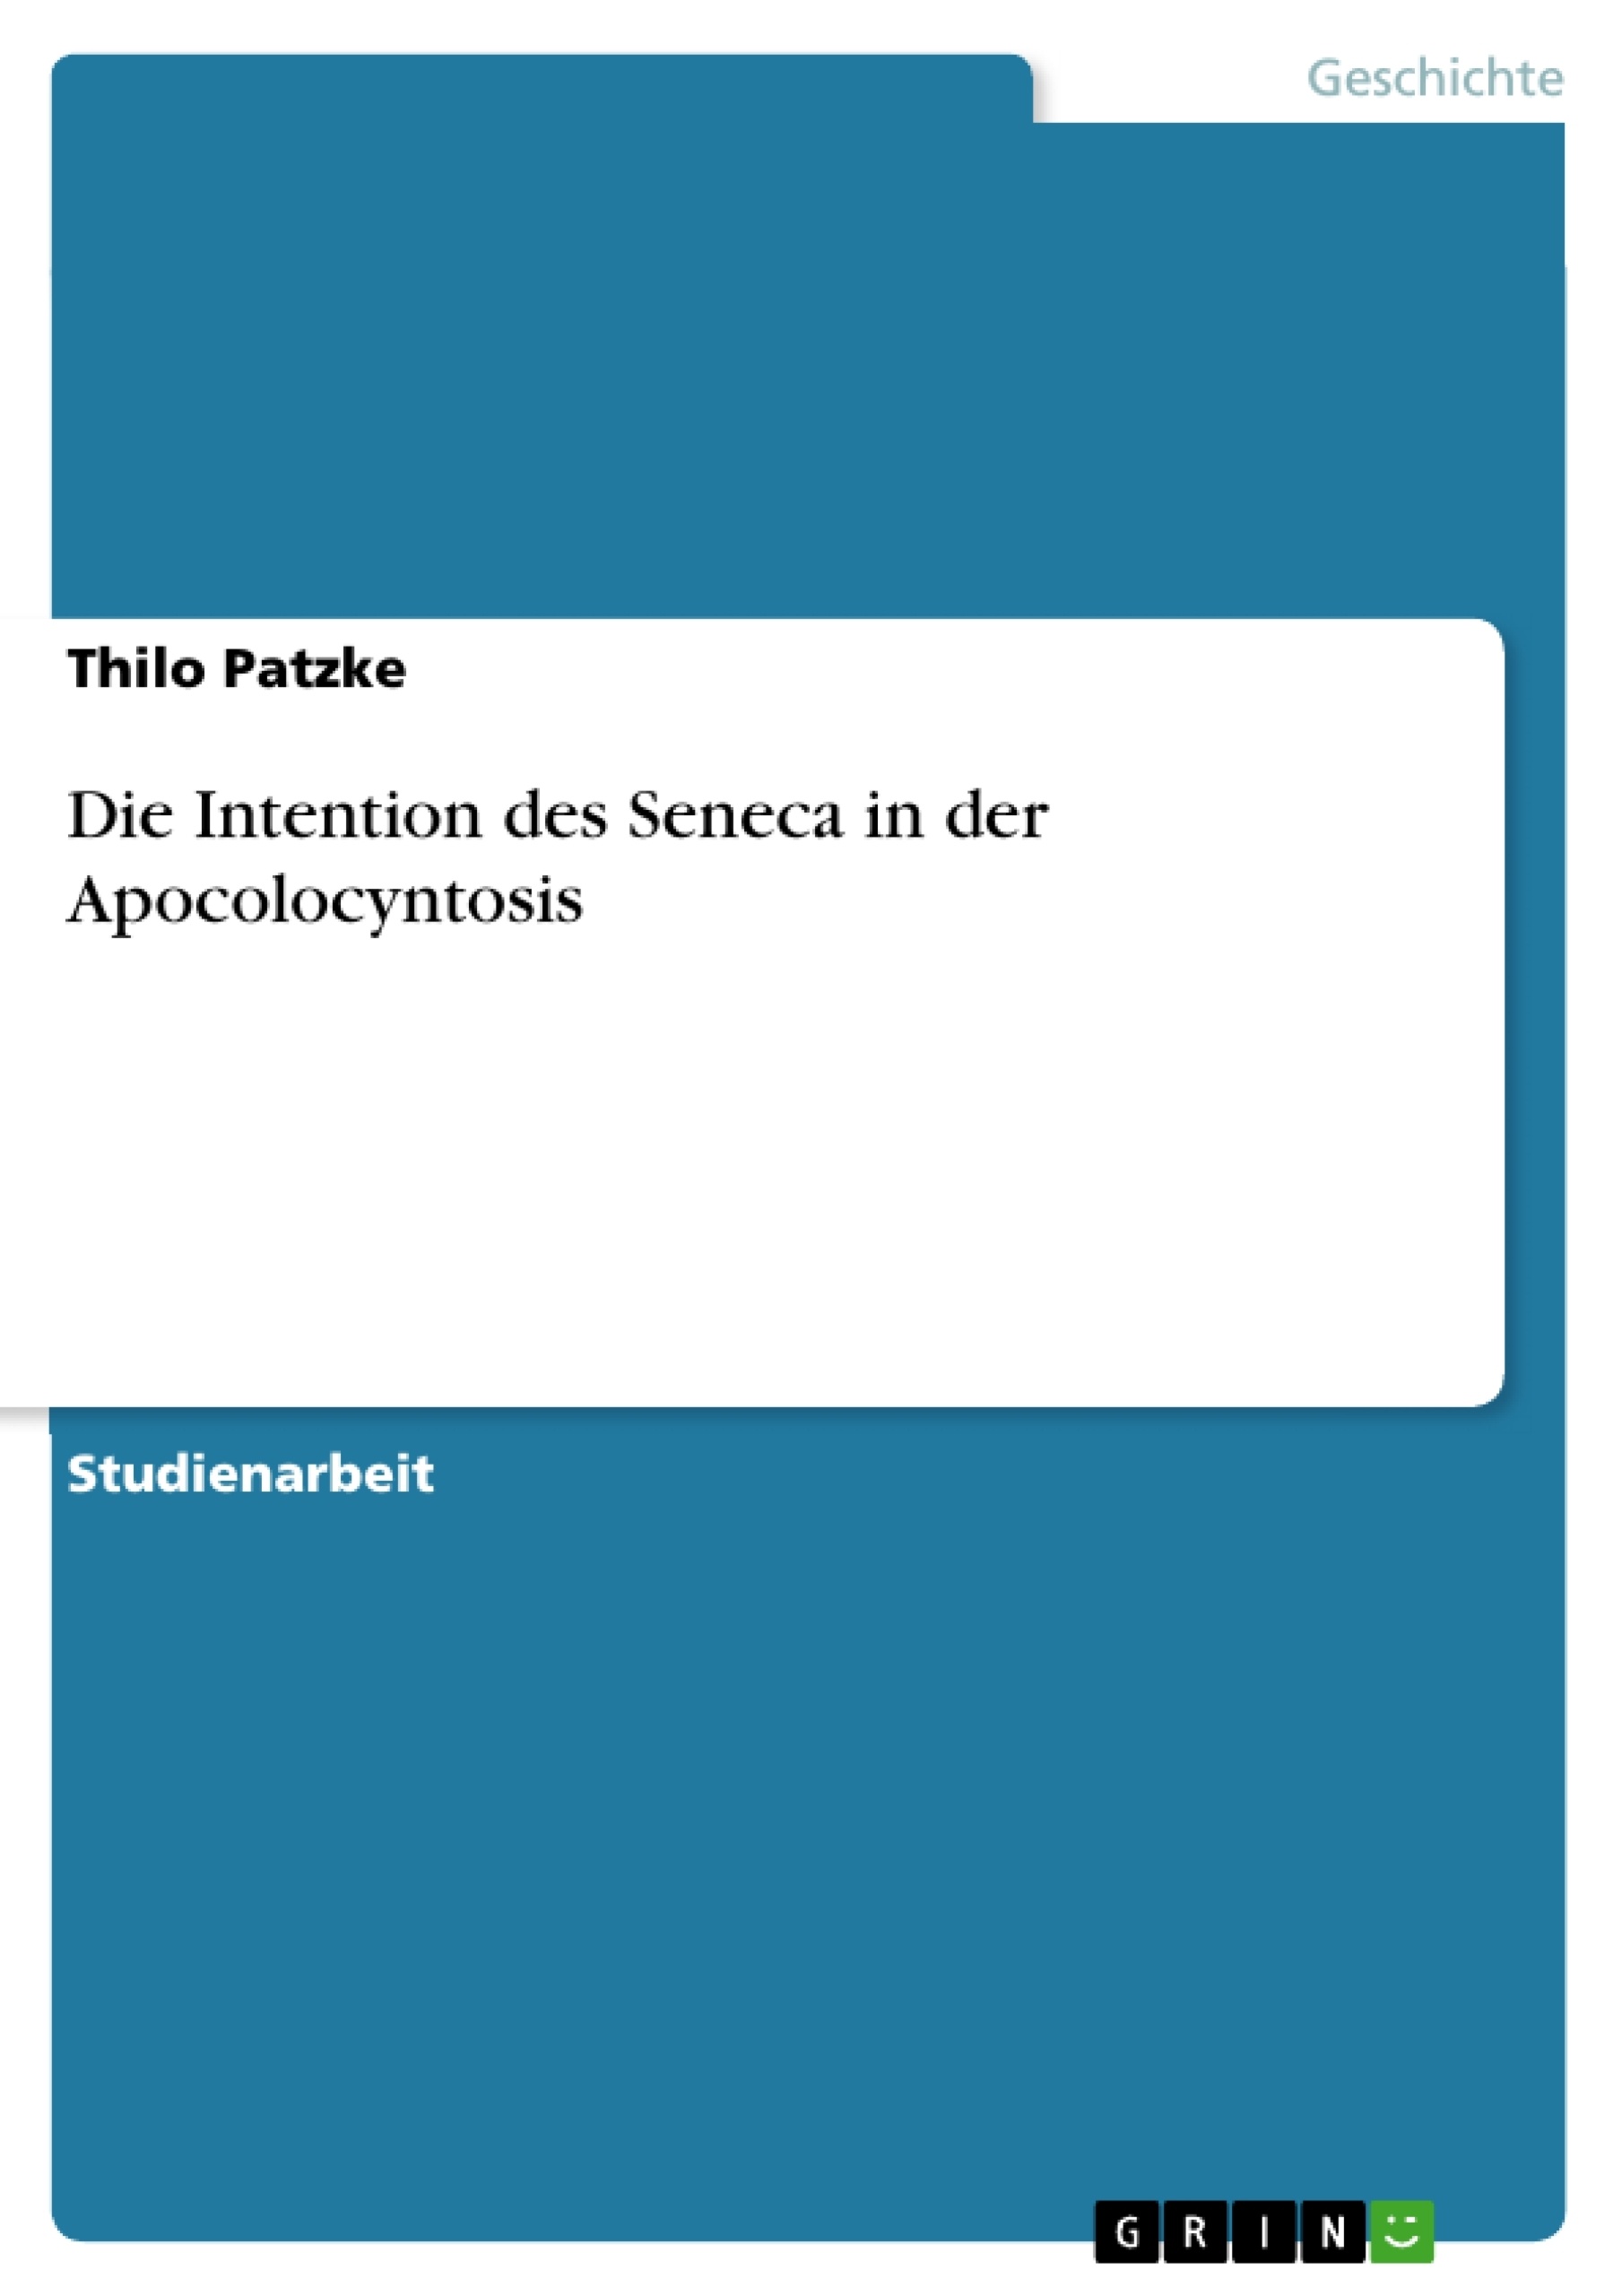 Title: Die Intention des Seneca in der Apocolocyntosis